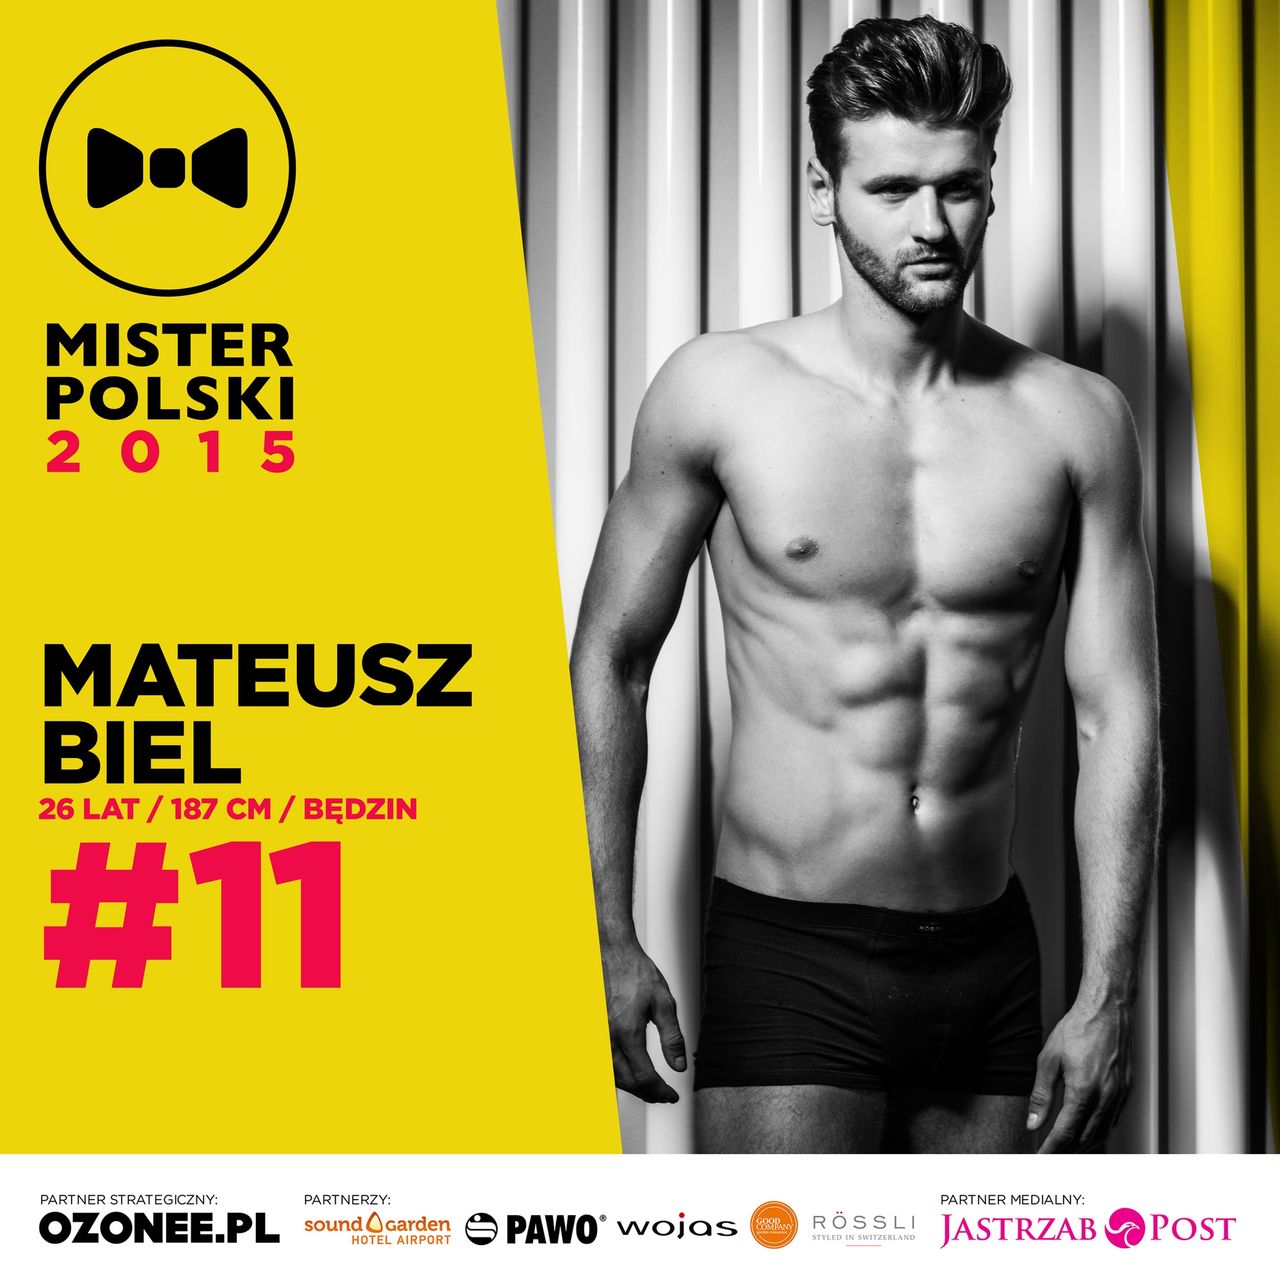 Mateusz Biel - nr 11 - Mister Polski 2015